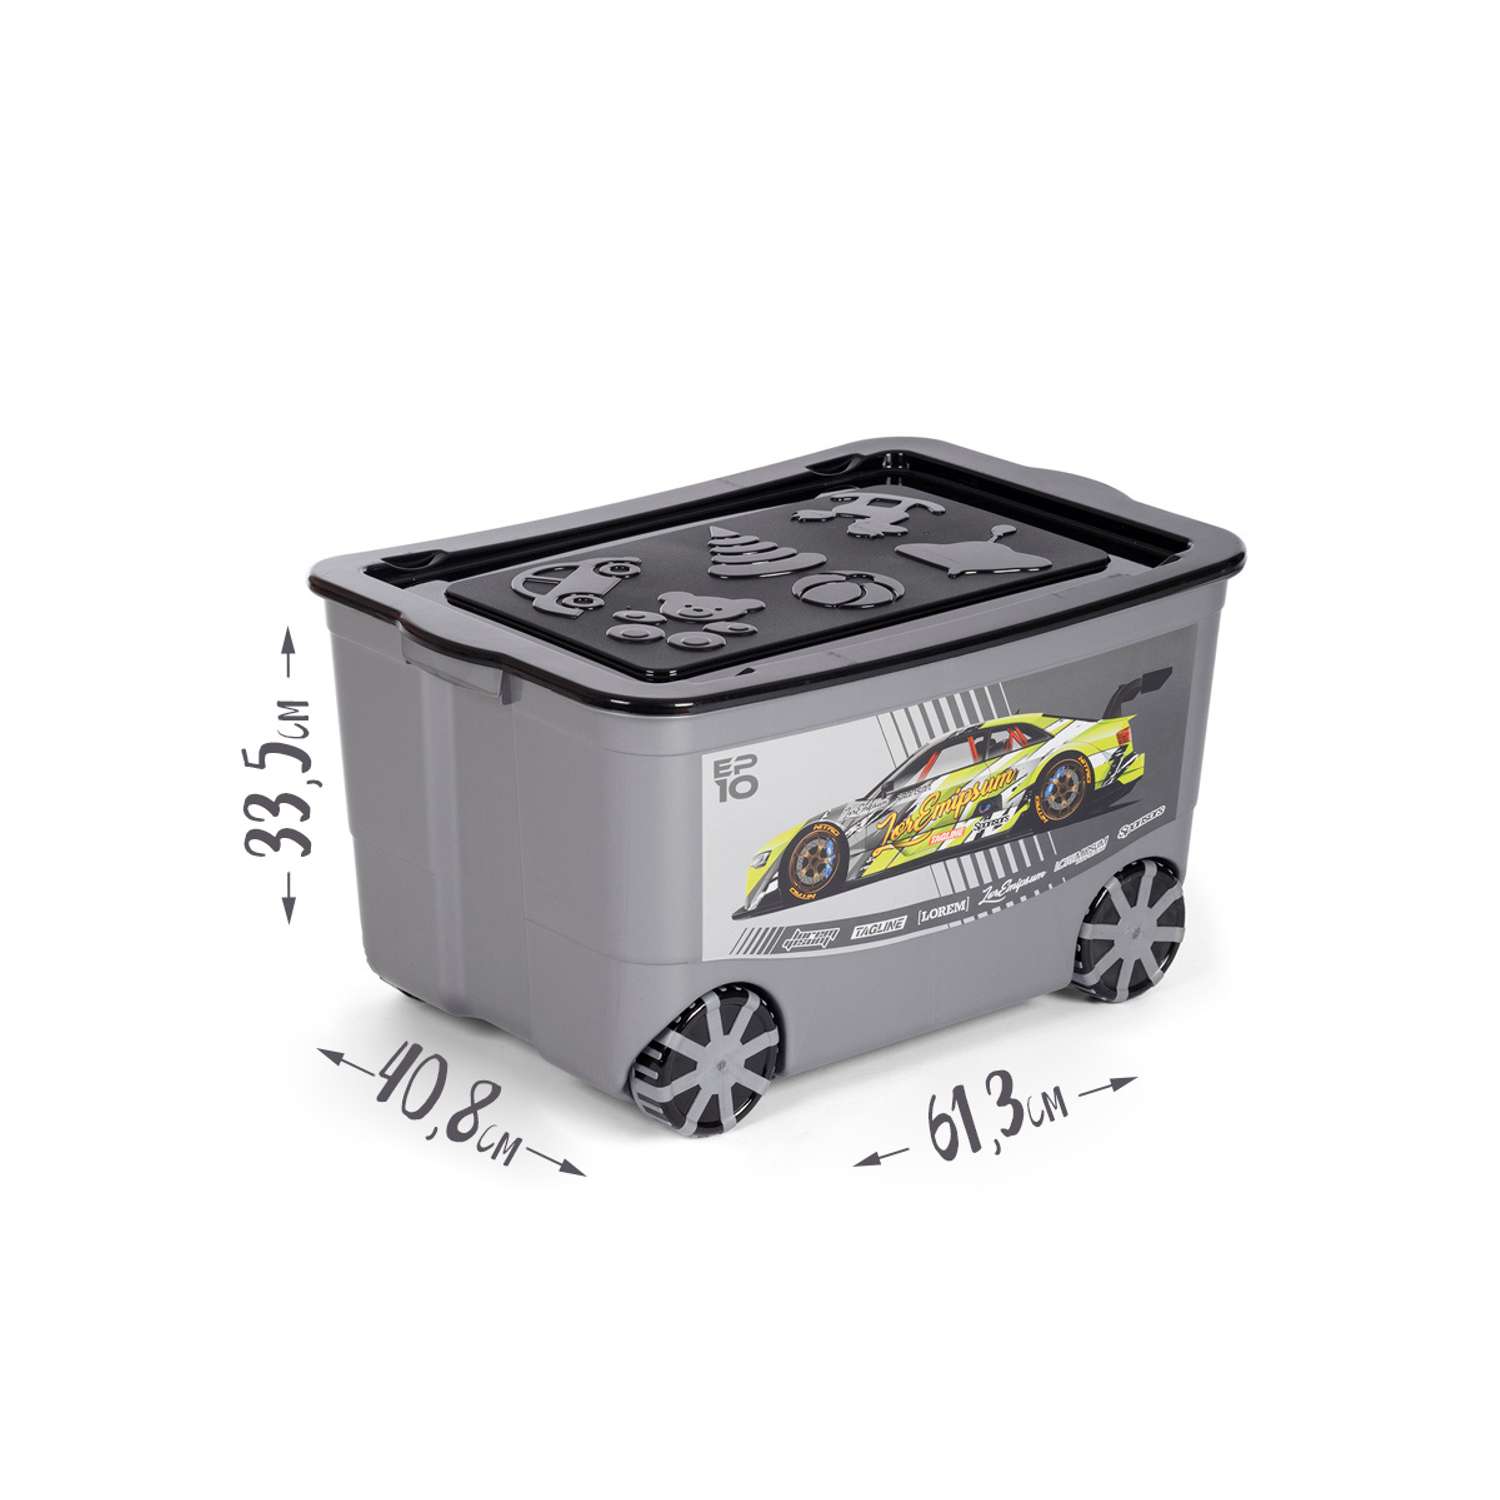 Ящик для игрушек elfplast KidsBox на колёсах темно серый черный - фото 2